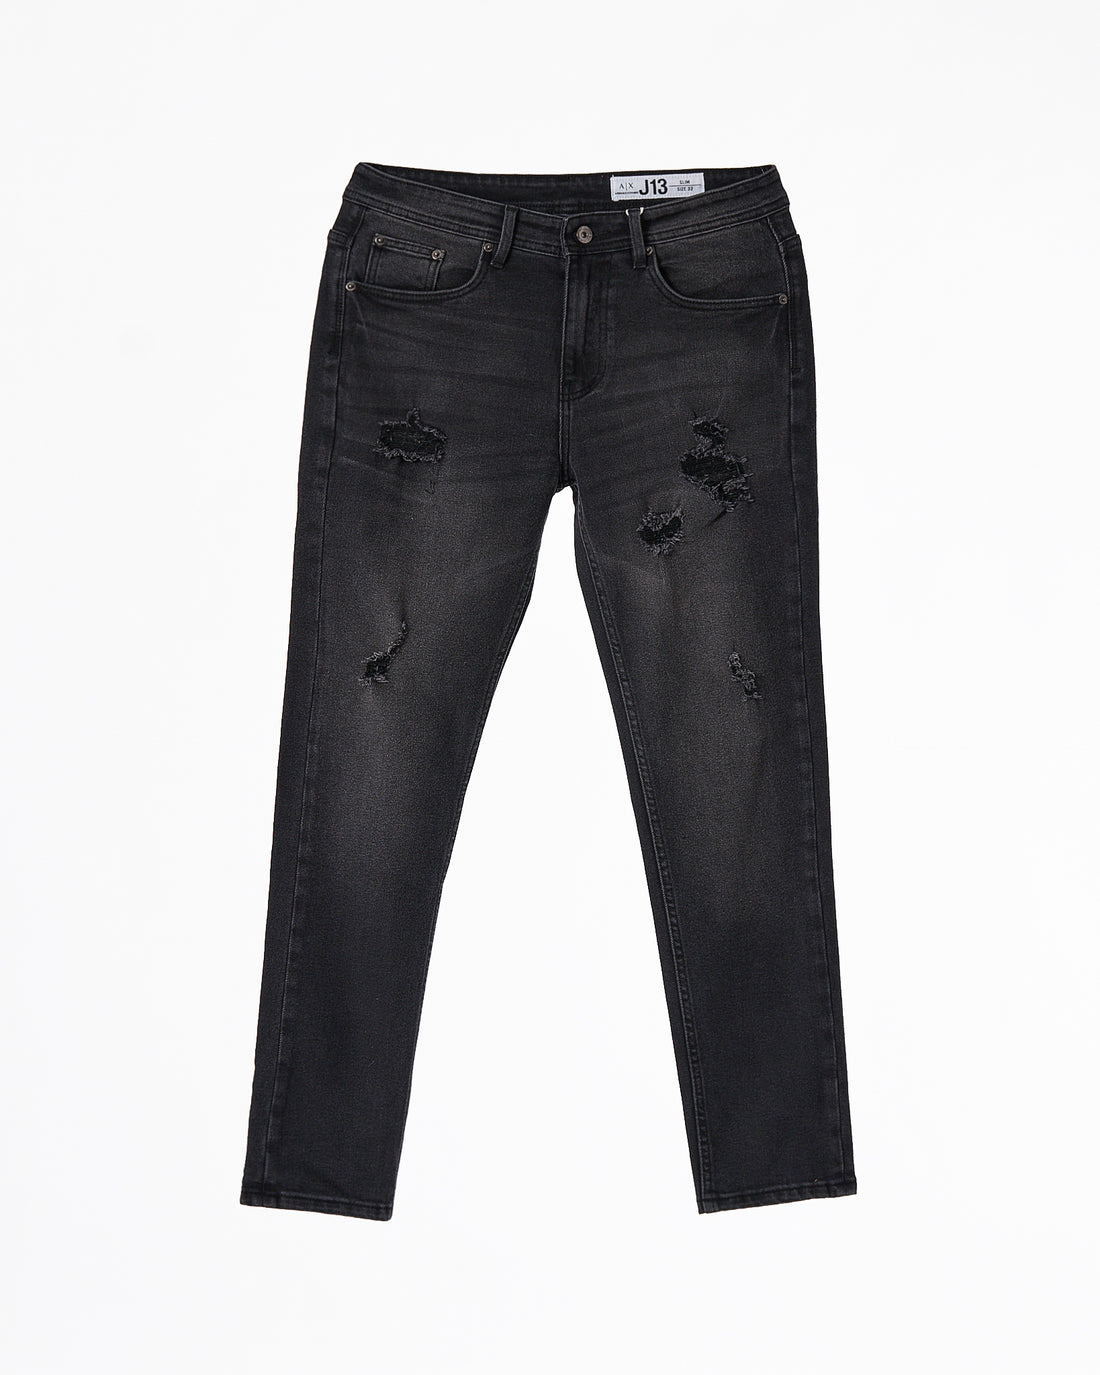 ARM Men Dark Grey Slim Fit Jeans 24.90